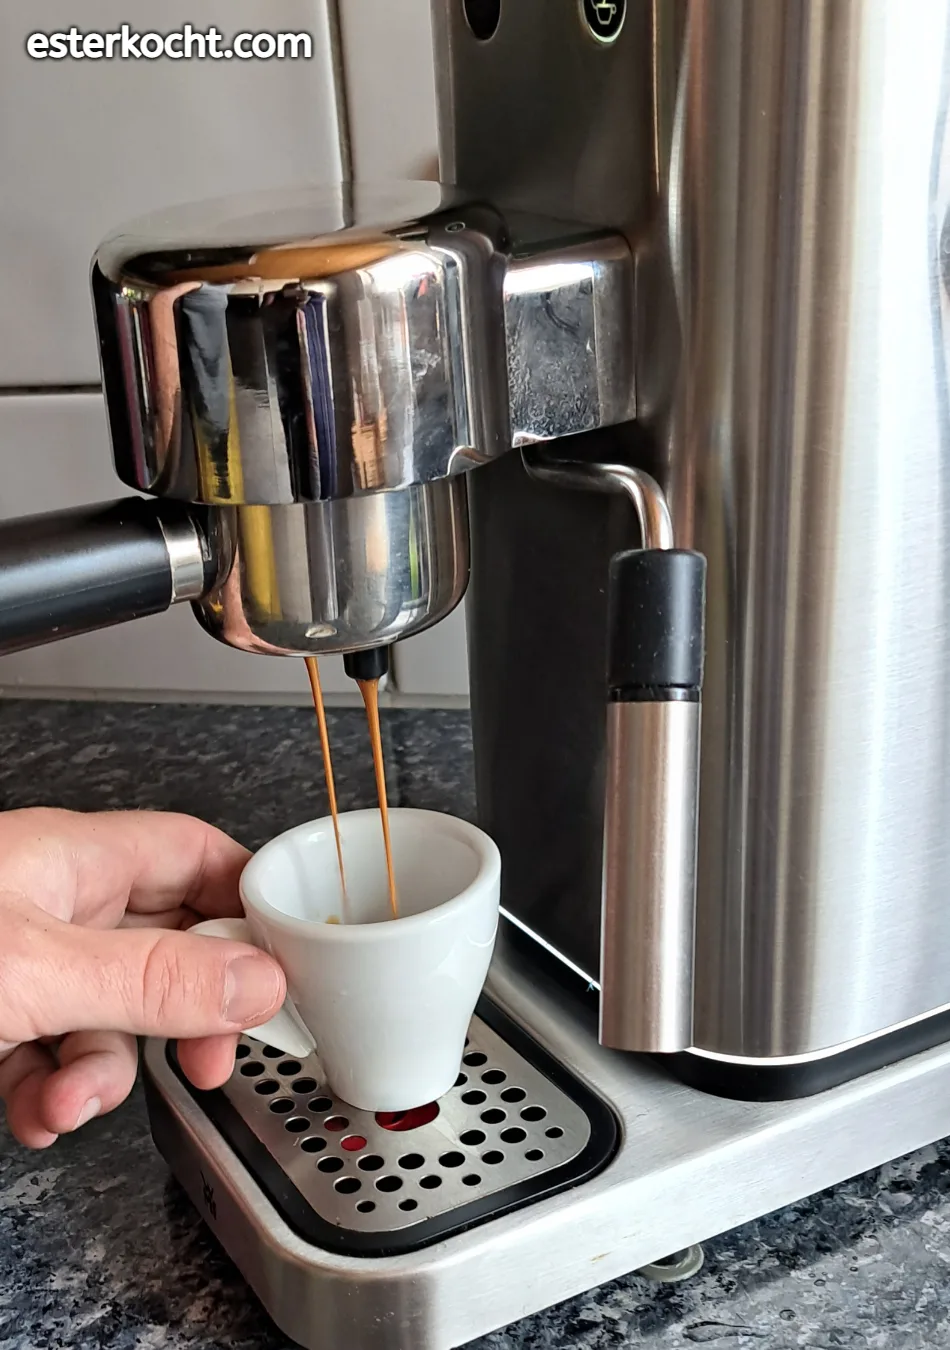 Ein Bild zeigt perfekten Espresso, der aus der Siebträgermaschine in die Tasse fließt, mit einem sanften, mäuseschwanzähnlichen Strahl.